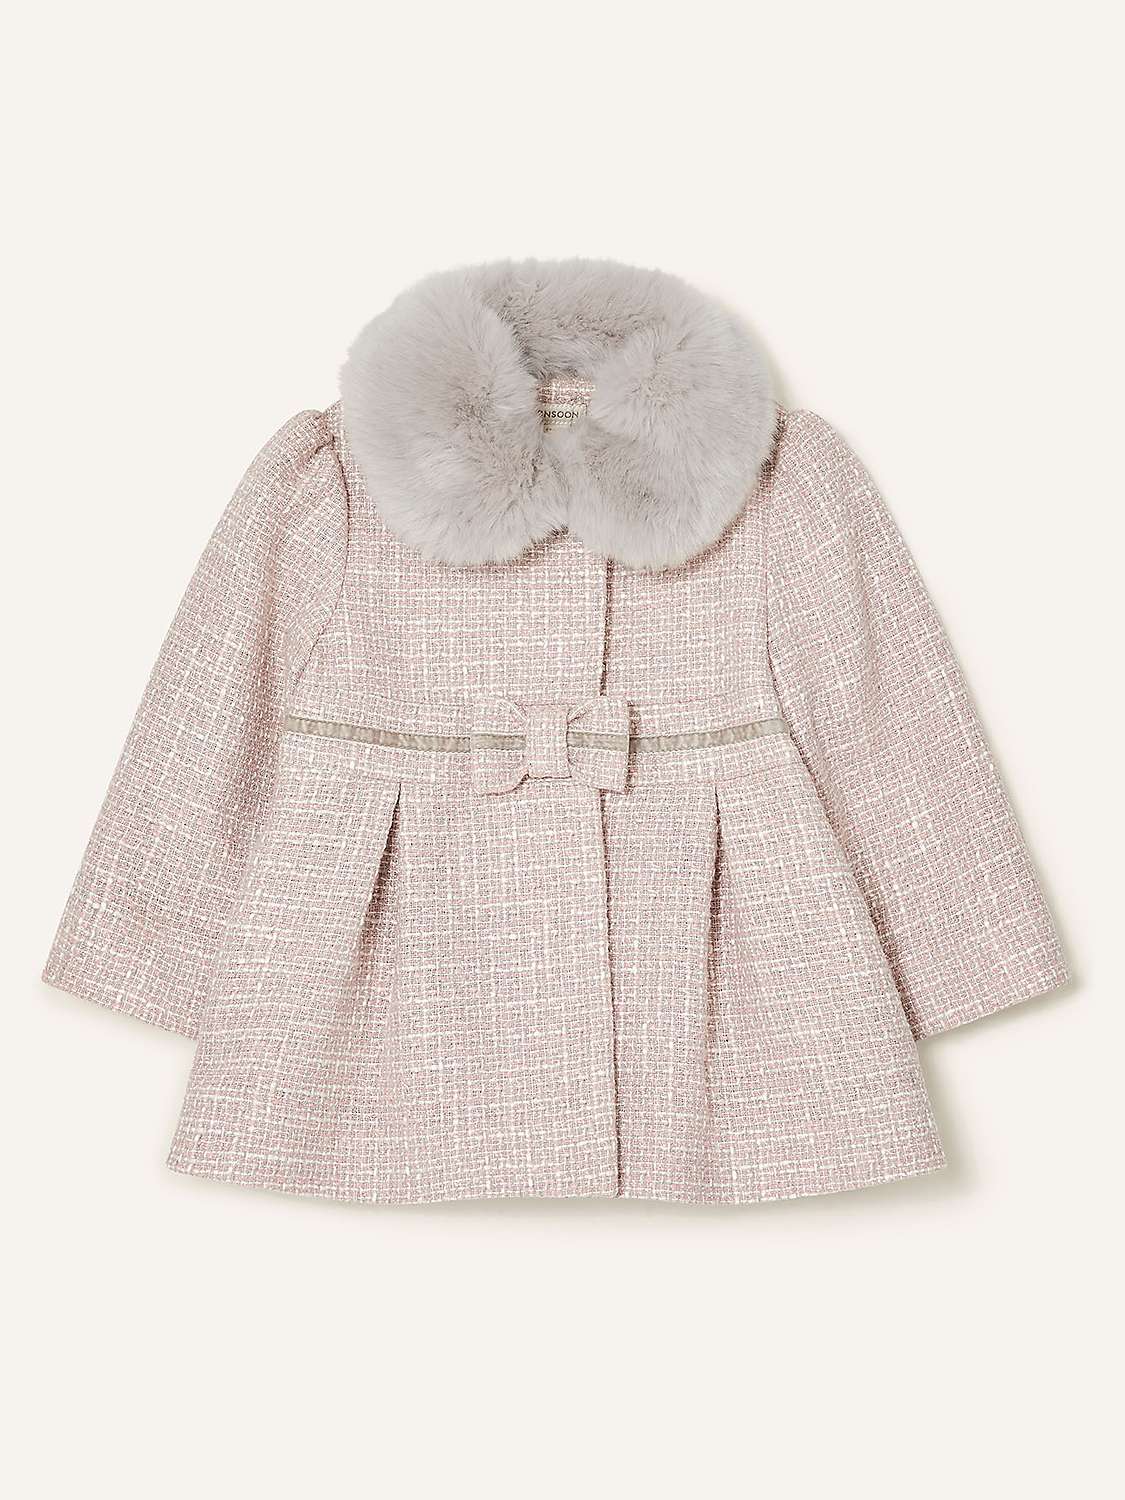 Buy Monsoon Baby Bow Tweed Coat, Grey Online at johnlewis.com